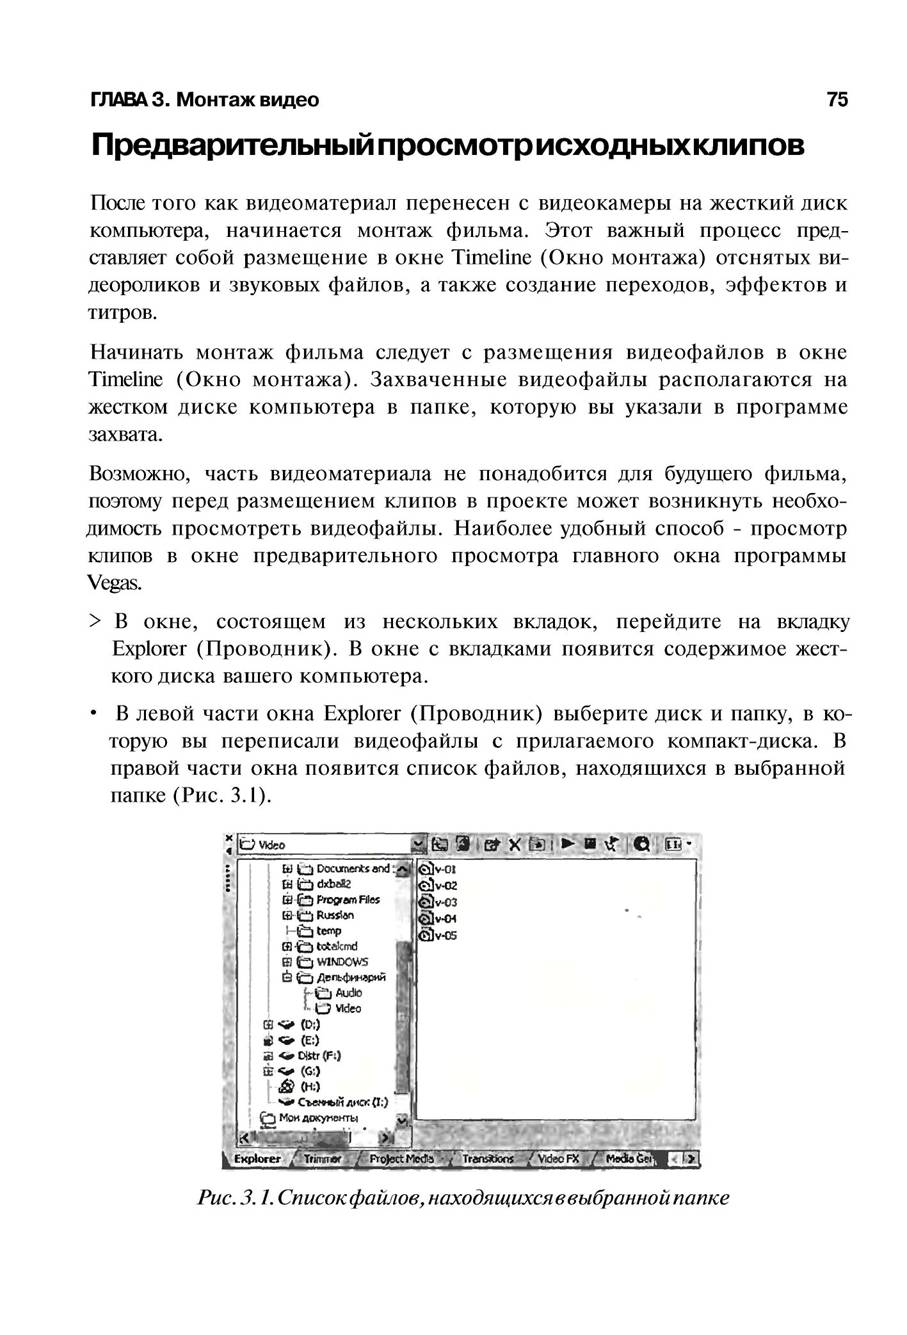 http://redaktori-uroki.3dn.ru/_ph/13/697237889.jpg